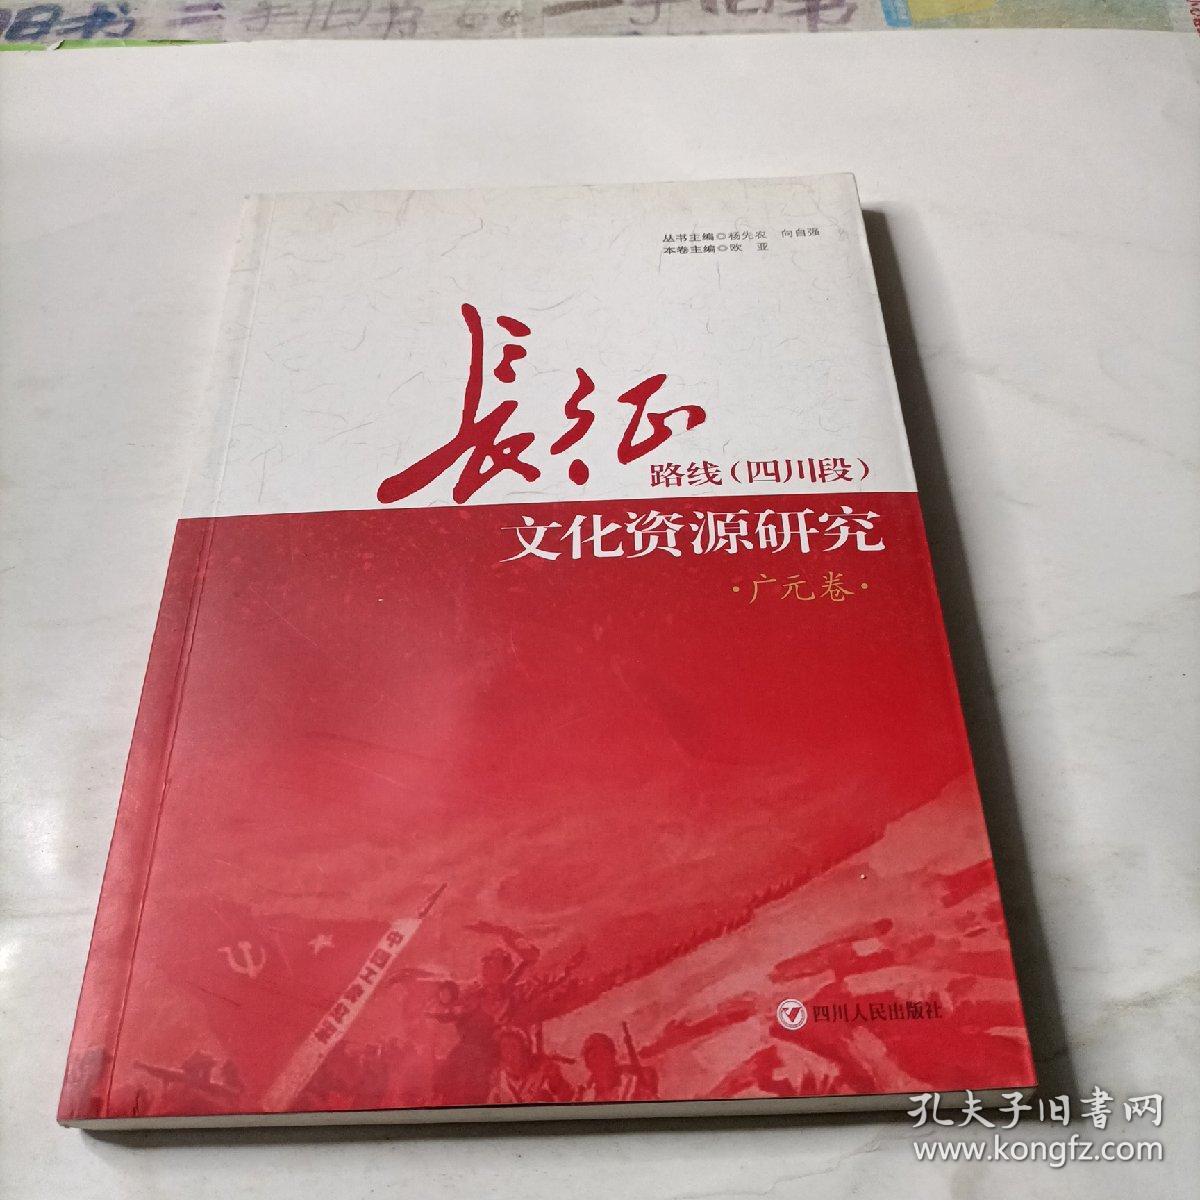 长征路线(四川段) 文化资源研究   广元卷